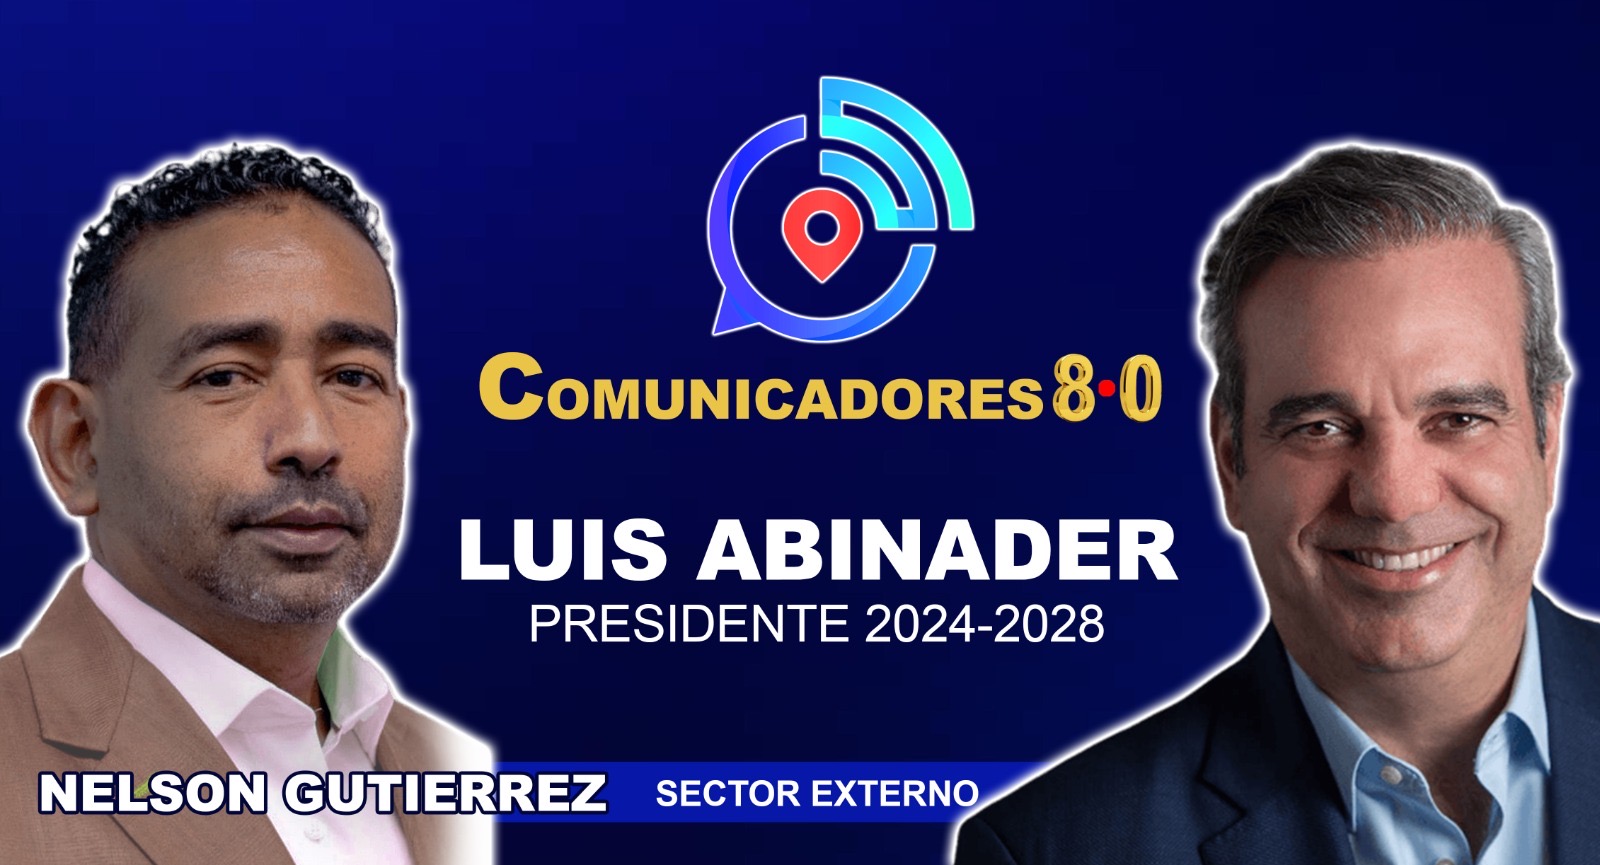 Comunicadores 8.0 Luis Abinader Presidente 2024-2028.  70% en primera vuelta.